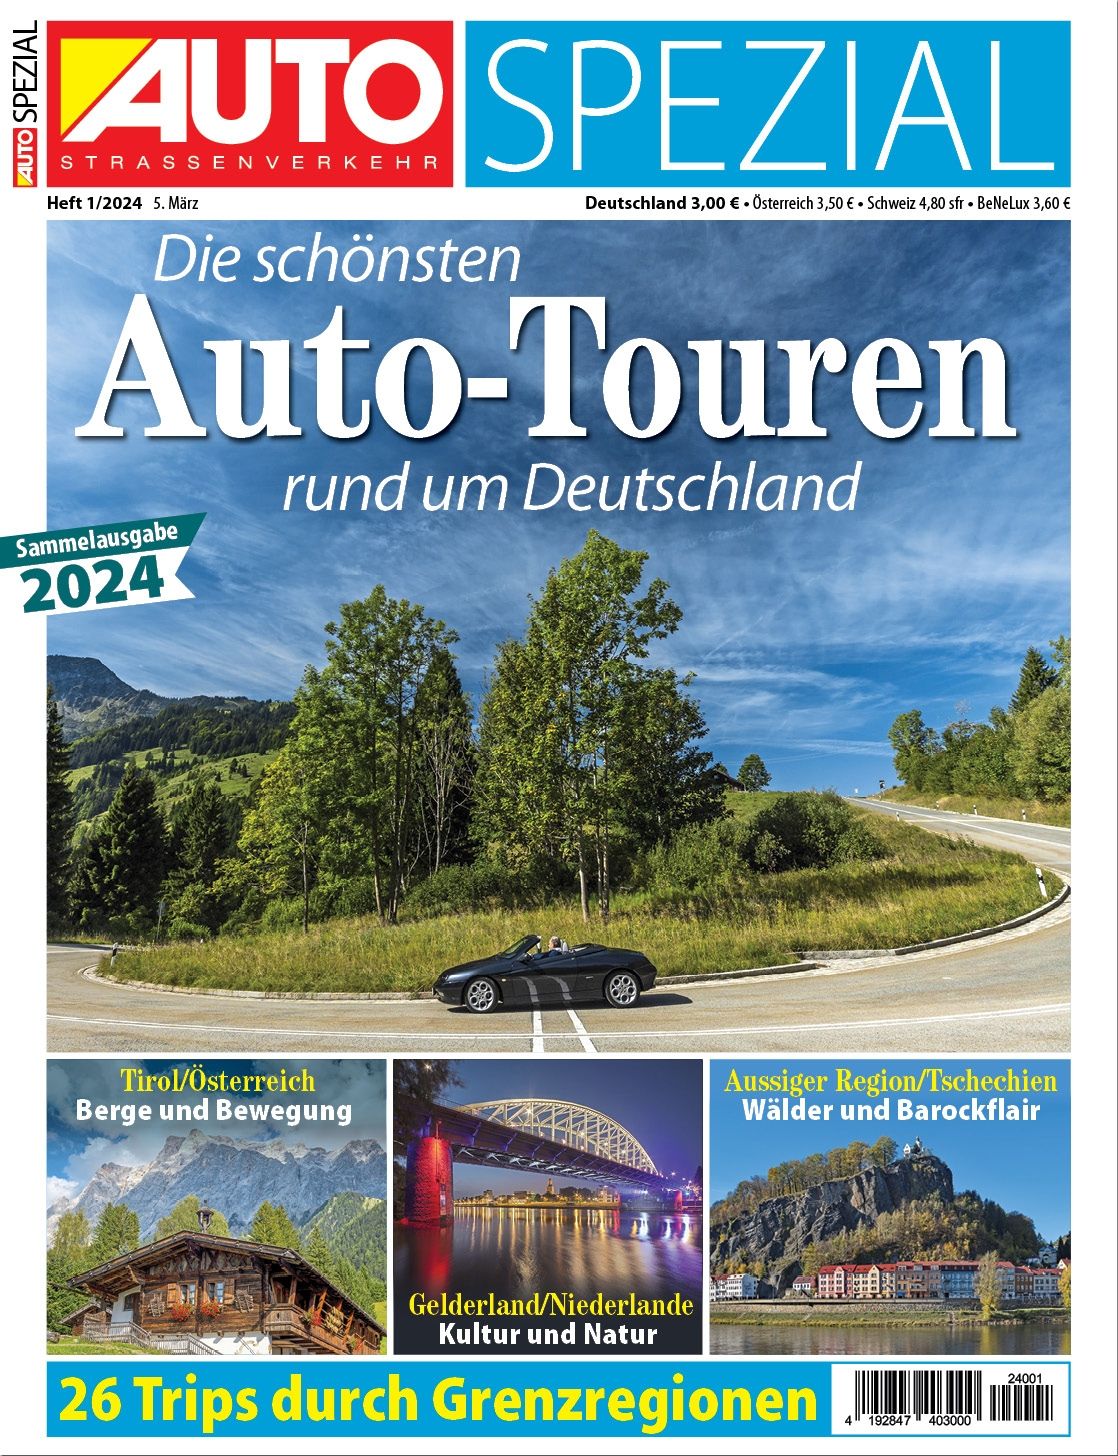 Foto: Die schönsten Auto-Touren in Deutschland und angrenzenden Regionen.